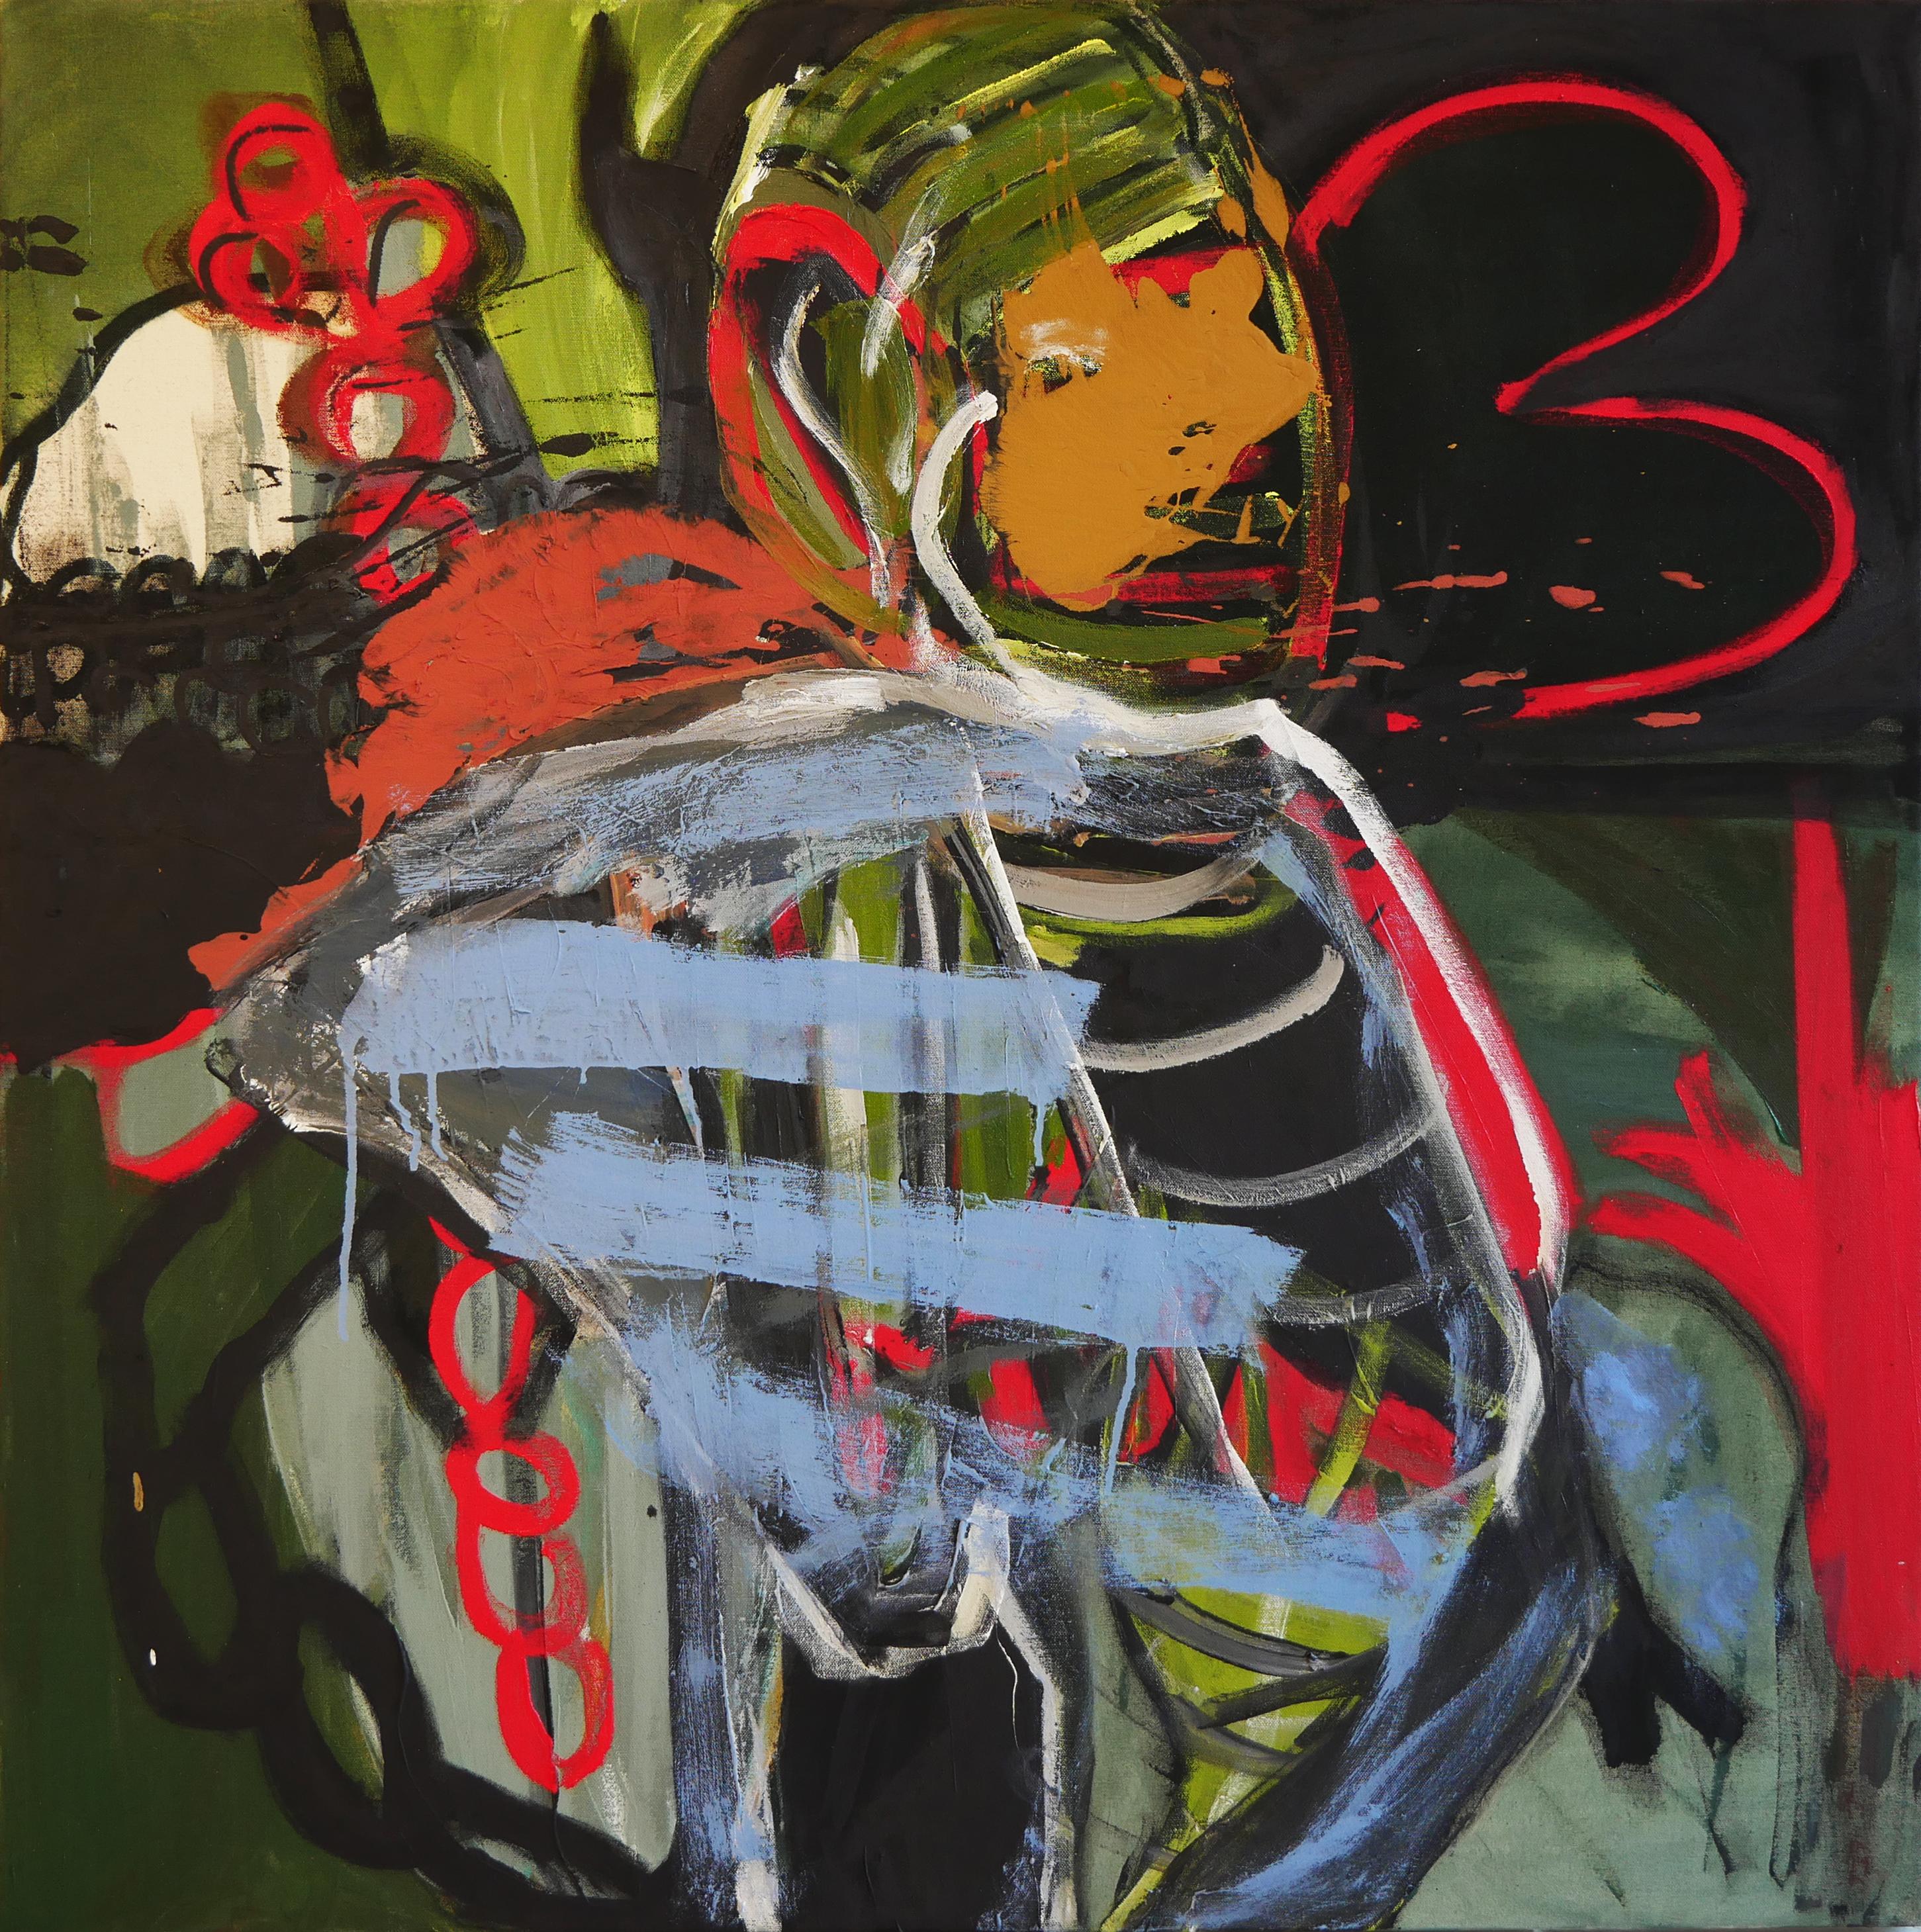 Tod Bailey Abstract Painting – "Krönung" Zeitgenössische abstrakte Malerei in Rot-, Blau- und Grüntönen